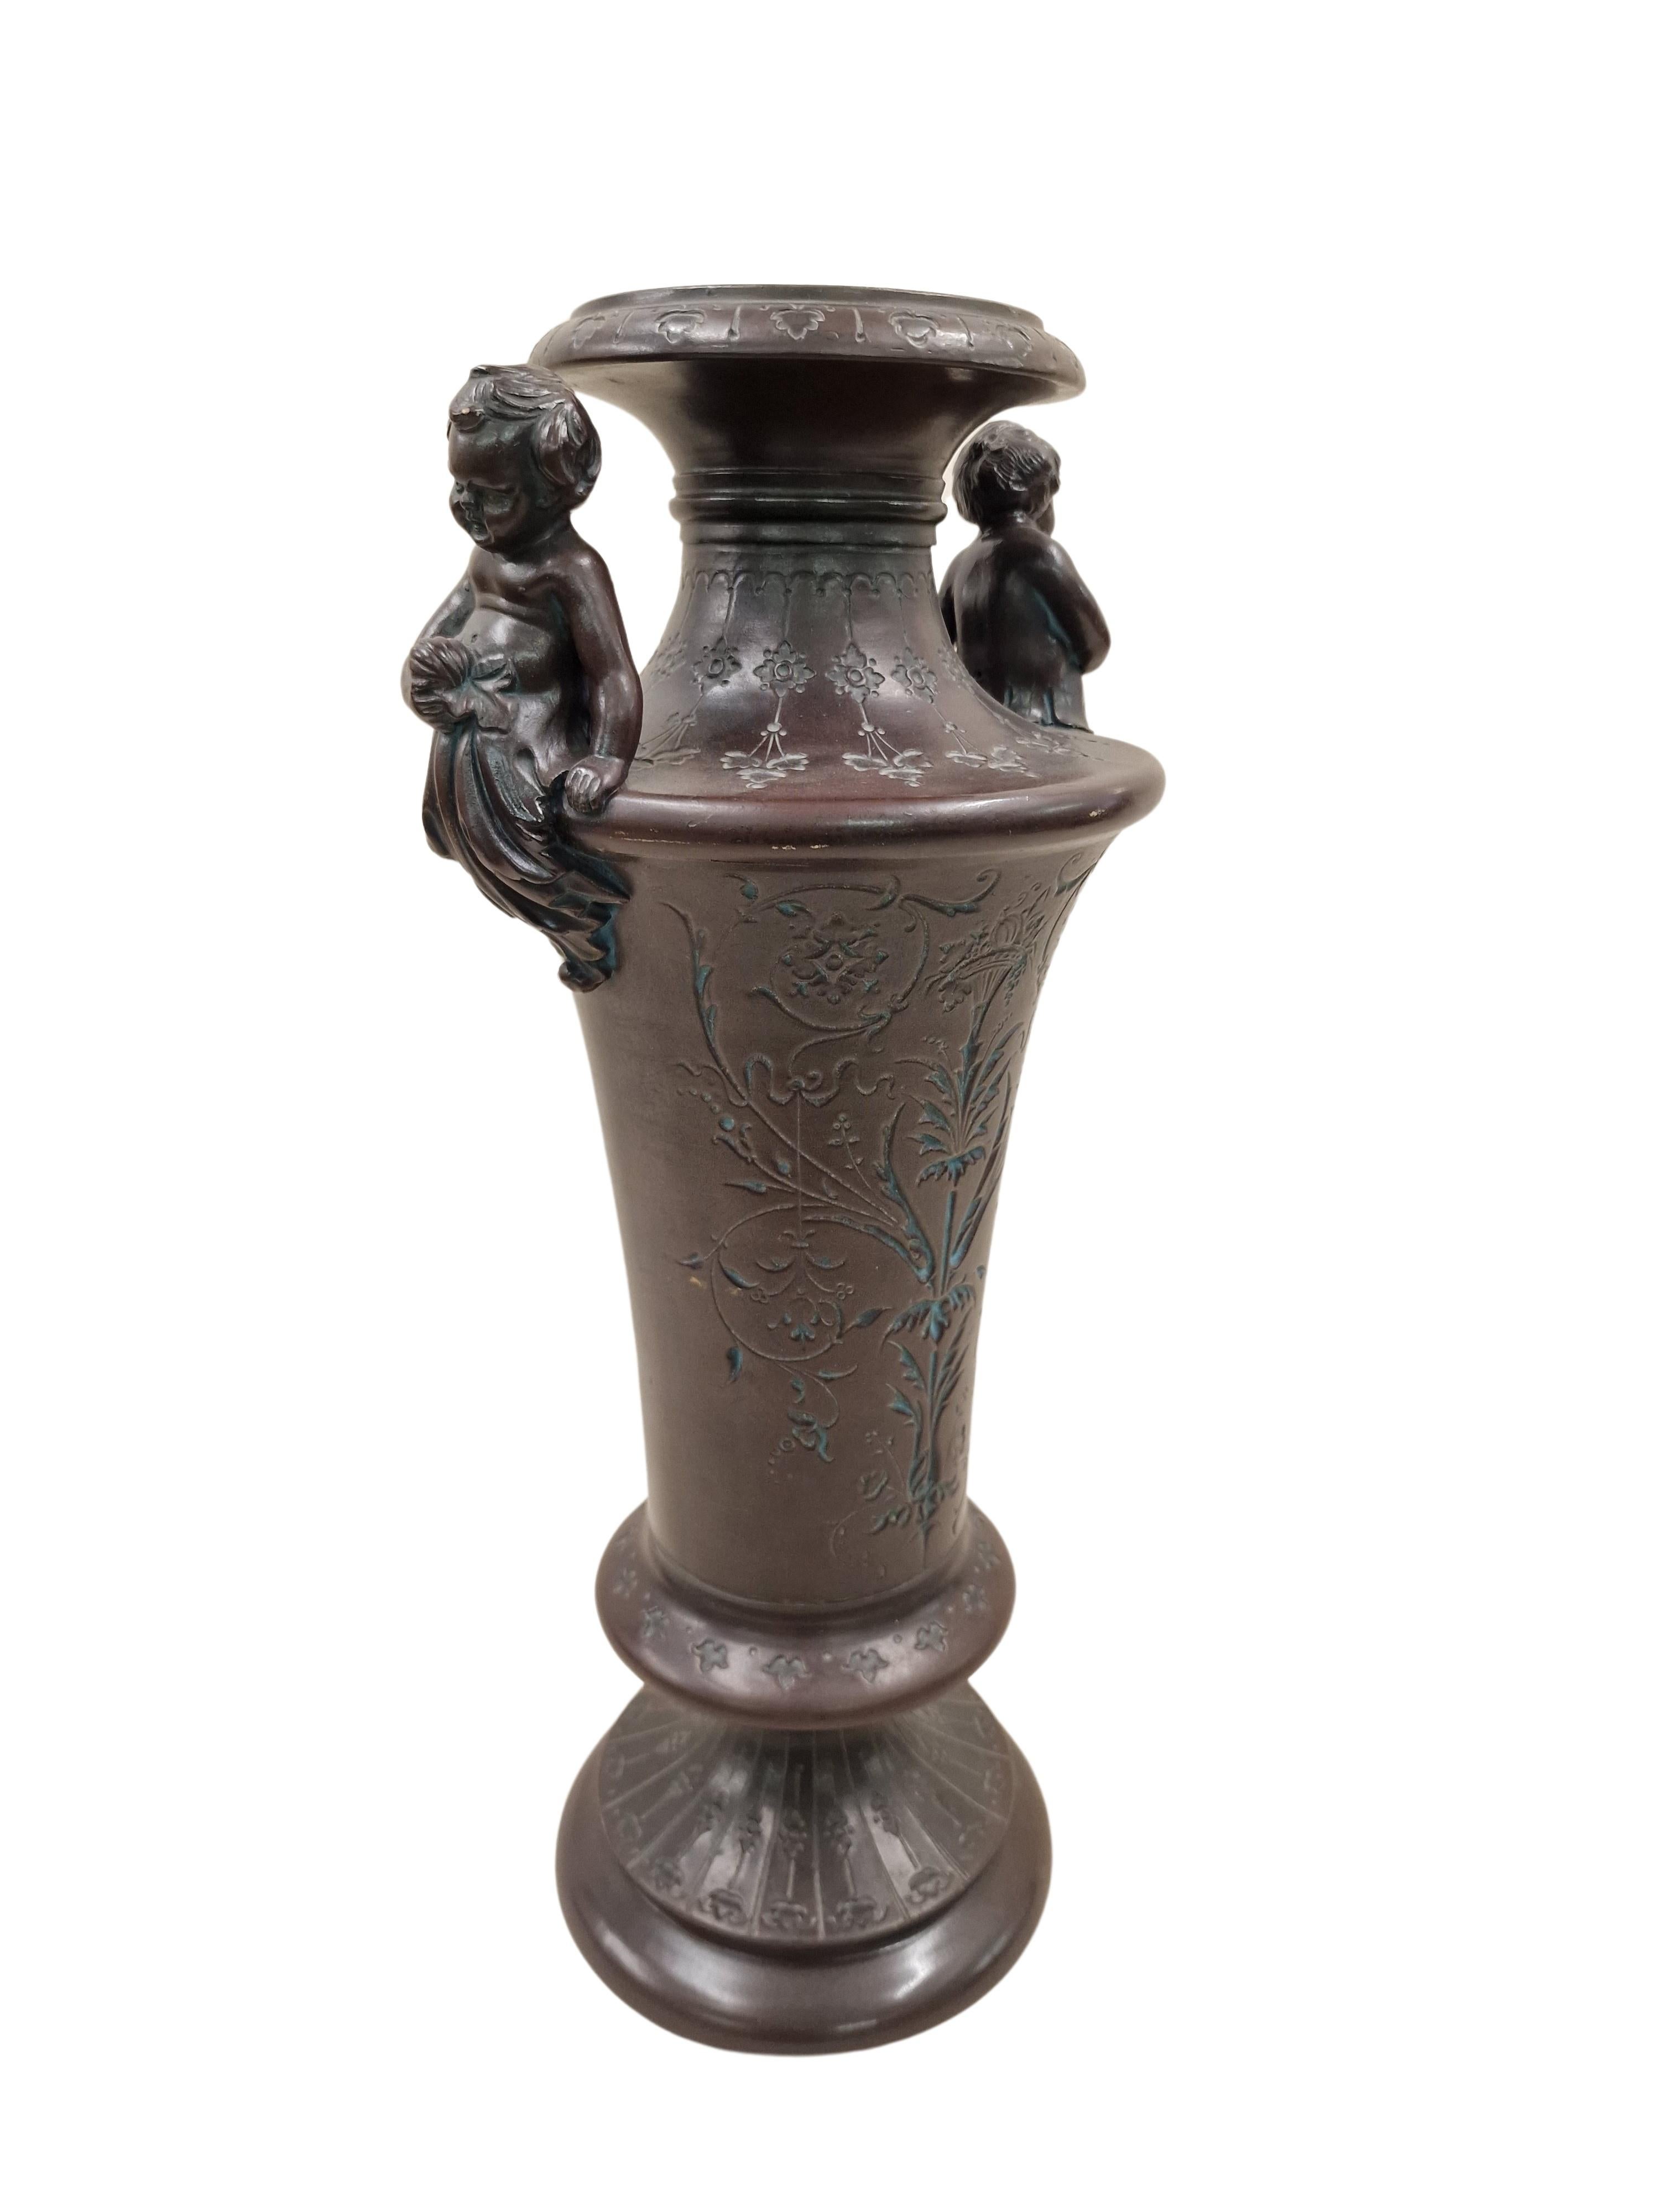 Grand vase en forme d'Amphore, du célèbre fabricant Bernhard Bloch de Bohemia. 
La belle forme émergente de l'amphore est ornée d'un décor taillé à la main sur tout le corps ainsi que sur la base. Le côté principal est décoré de motifs floraux et